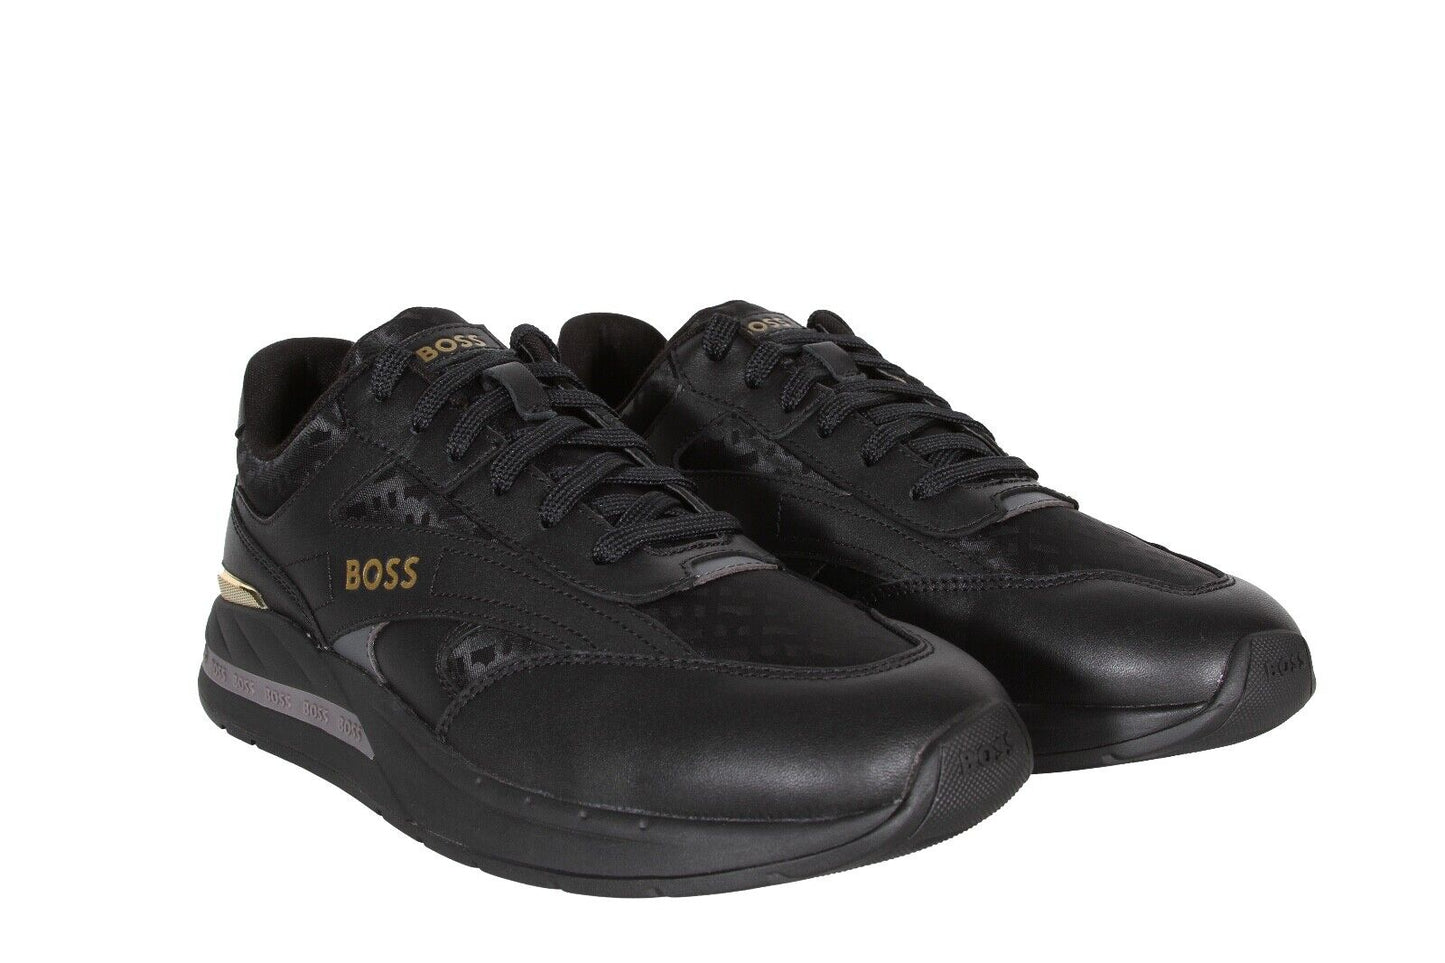 HUGO BOSS Kurt_Runn_mnmx Men’s Sneakers in Black 50502901-007